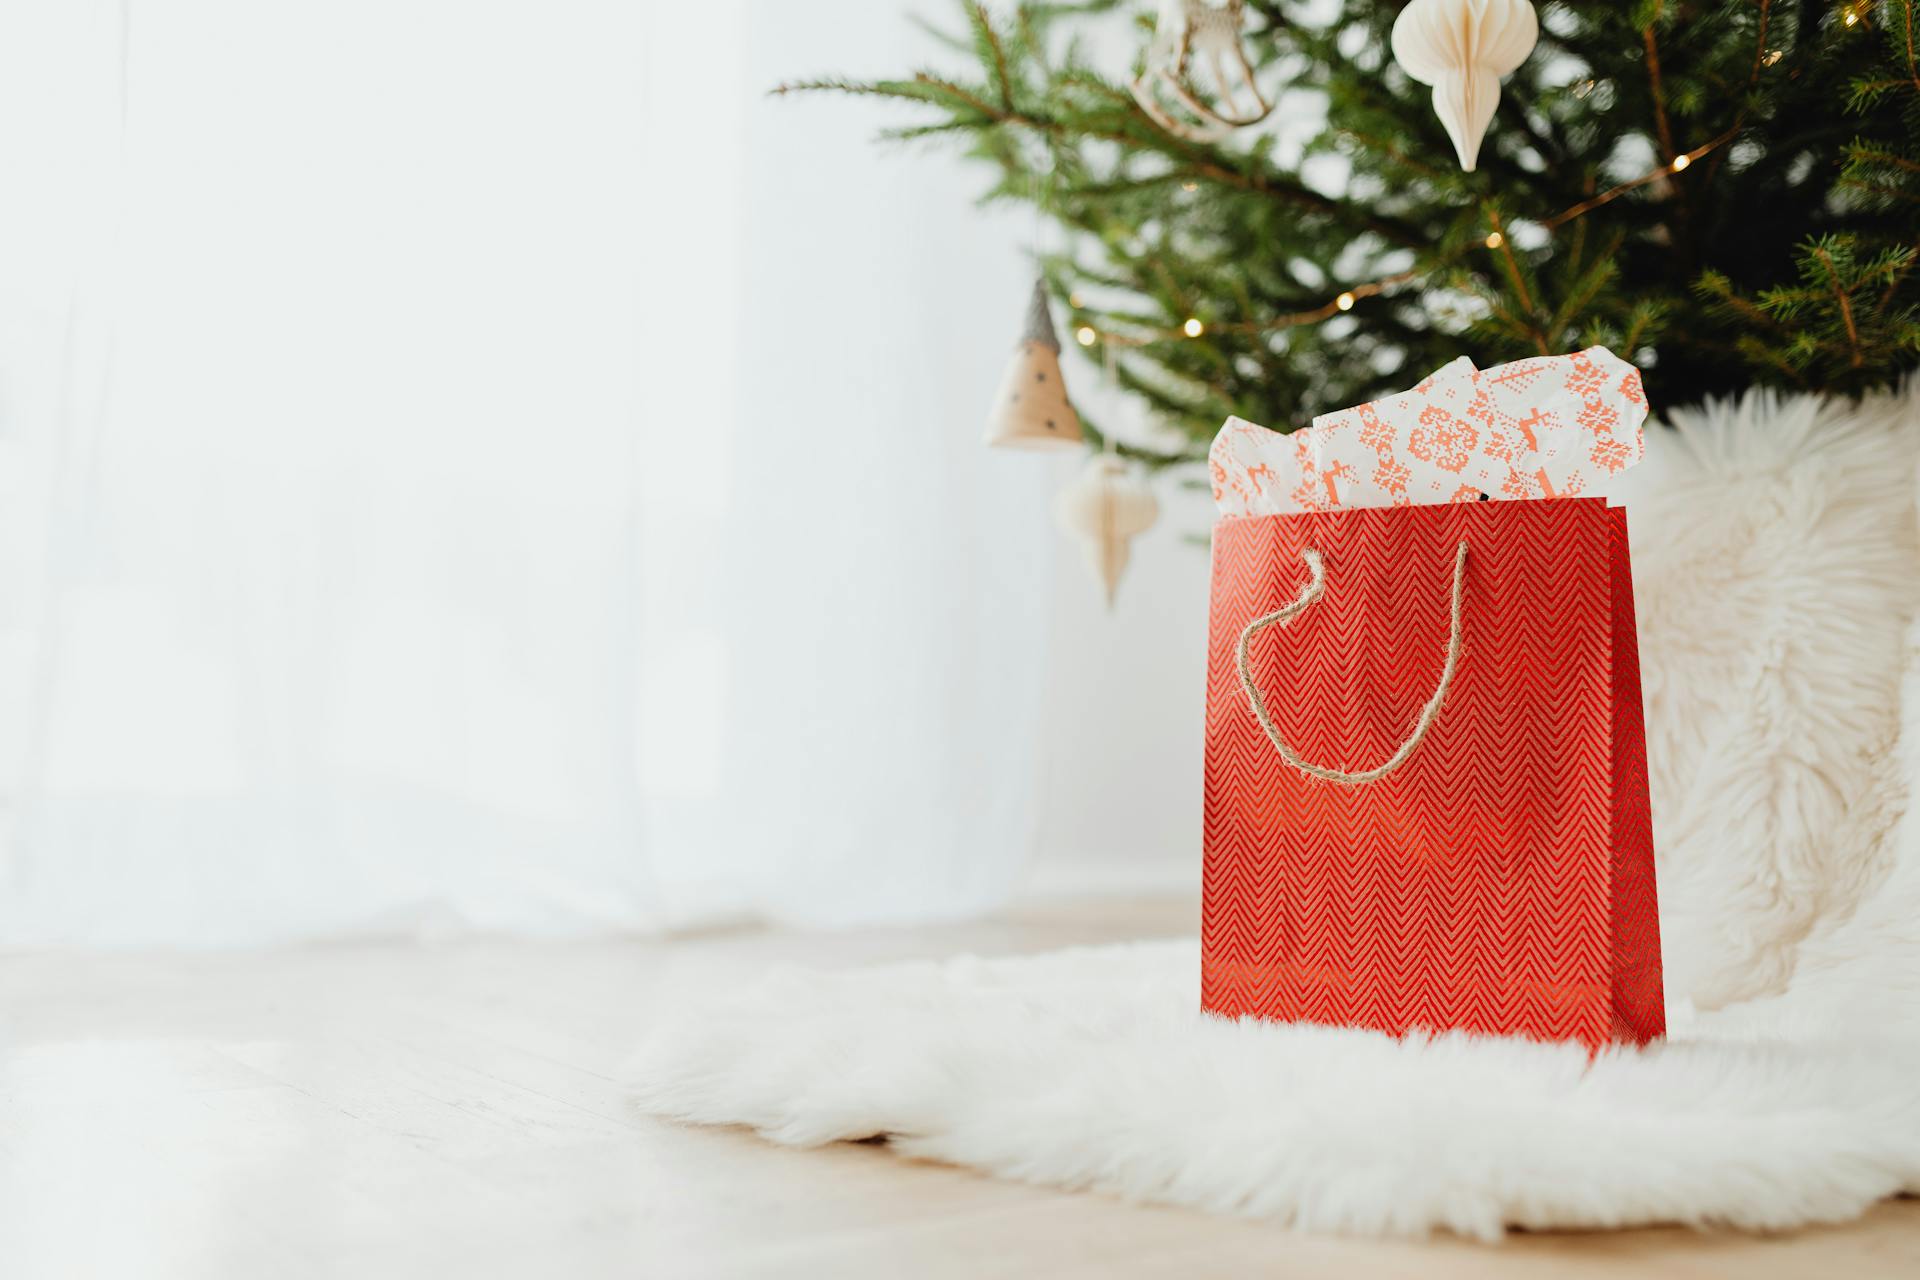 Una bolsa de regalo roja sobre una alfombra de piel blanca | Fuente: Pexels